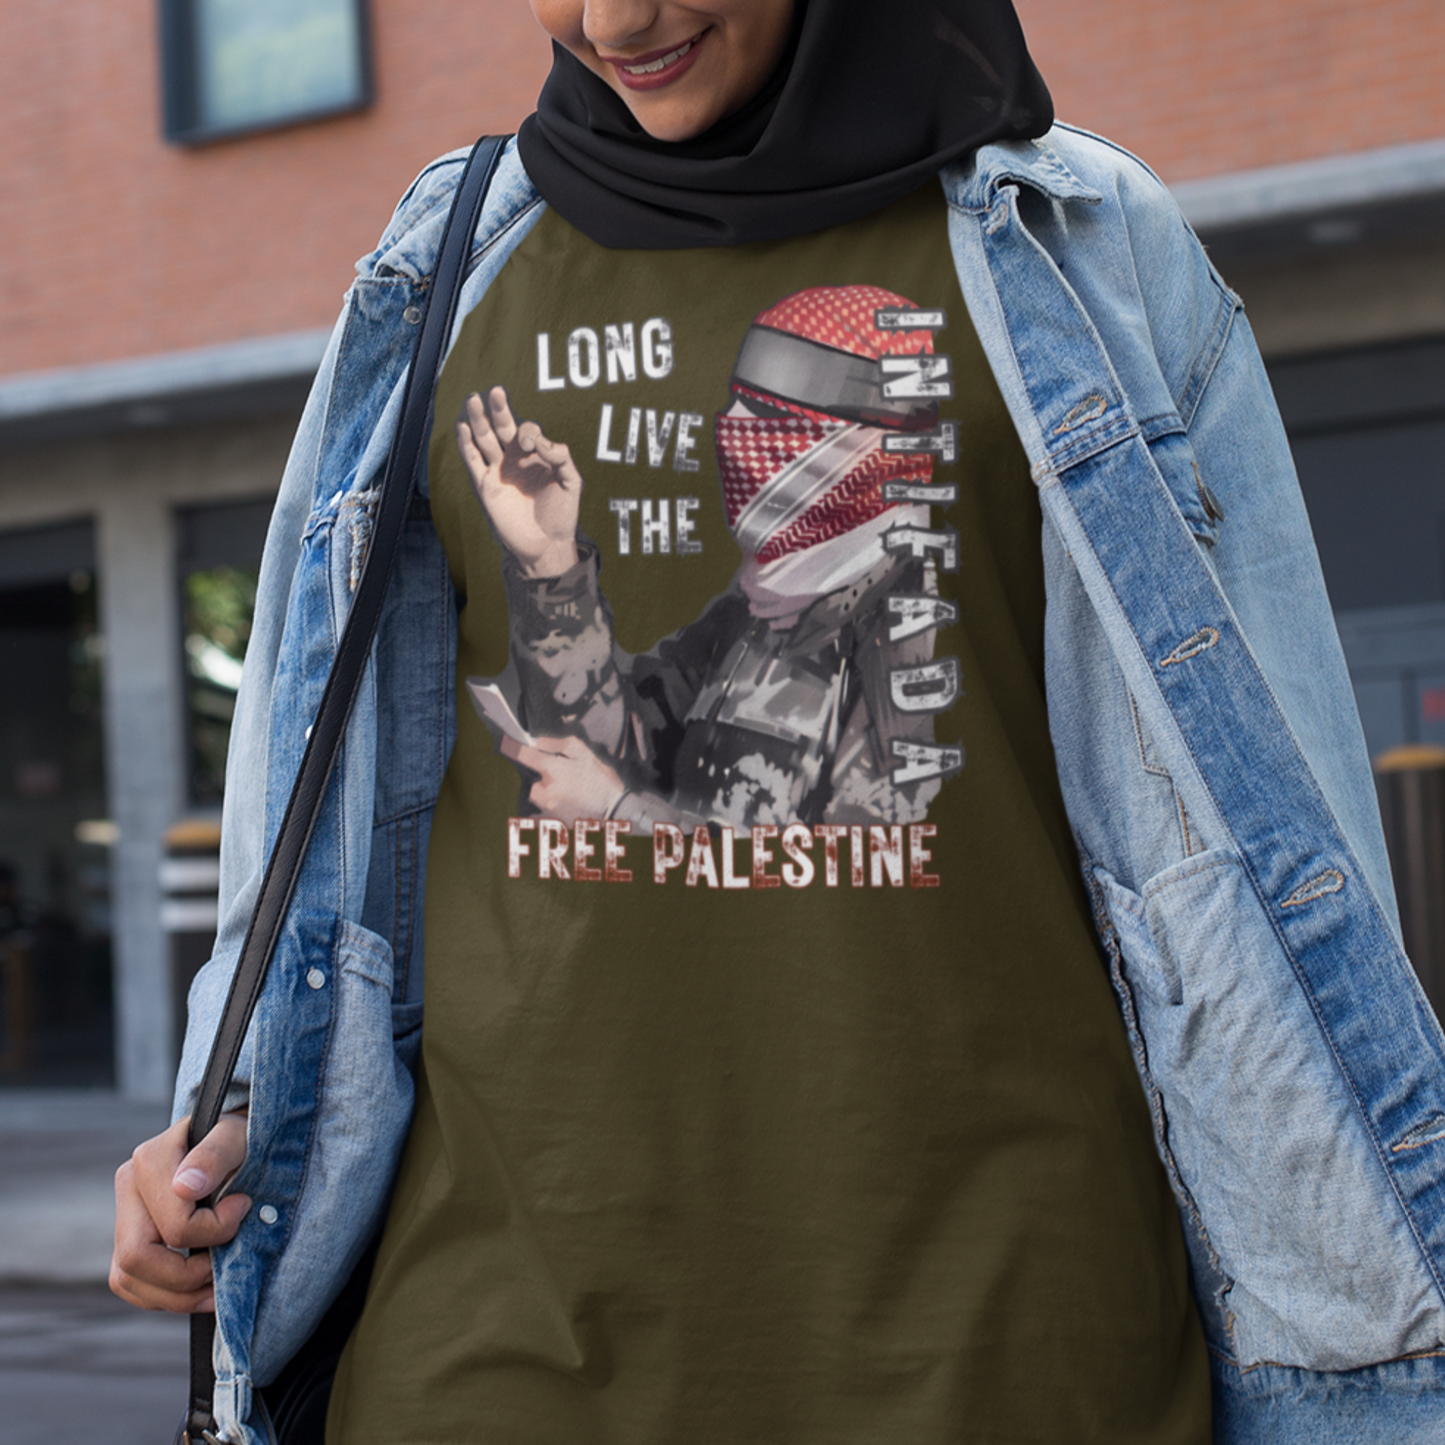 Long Live the Intifada Odeida Tshirt